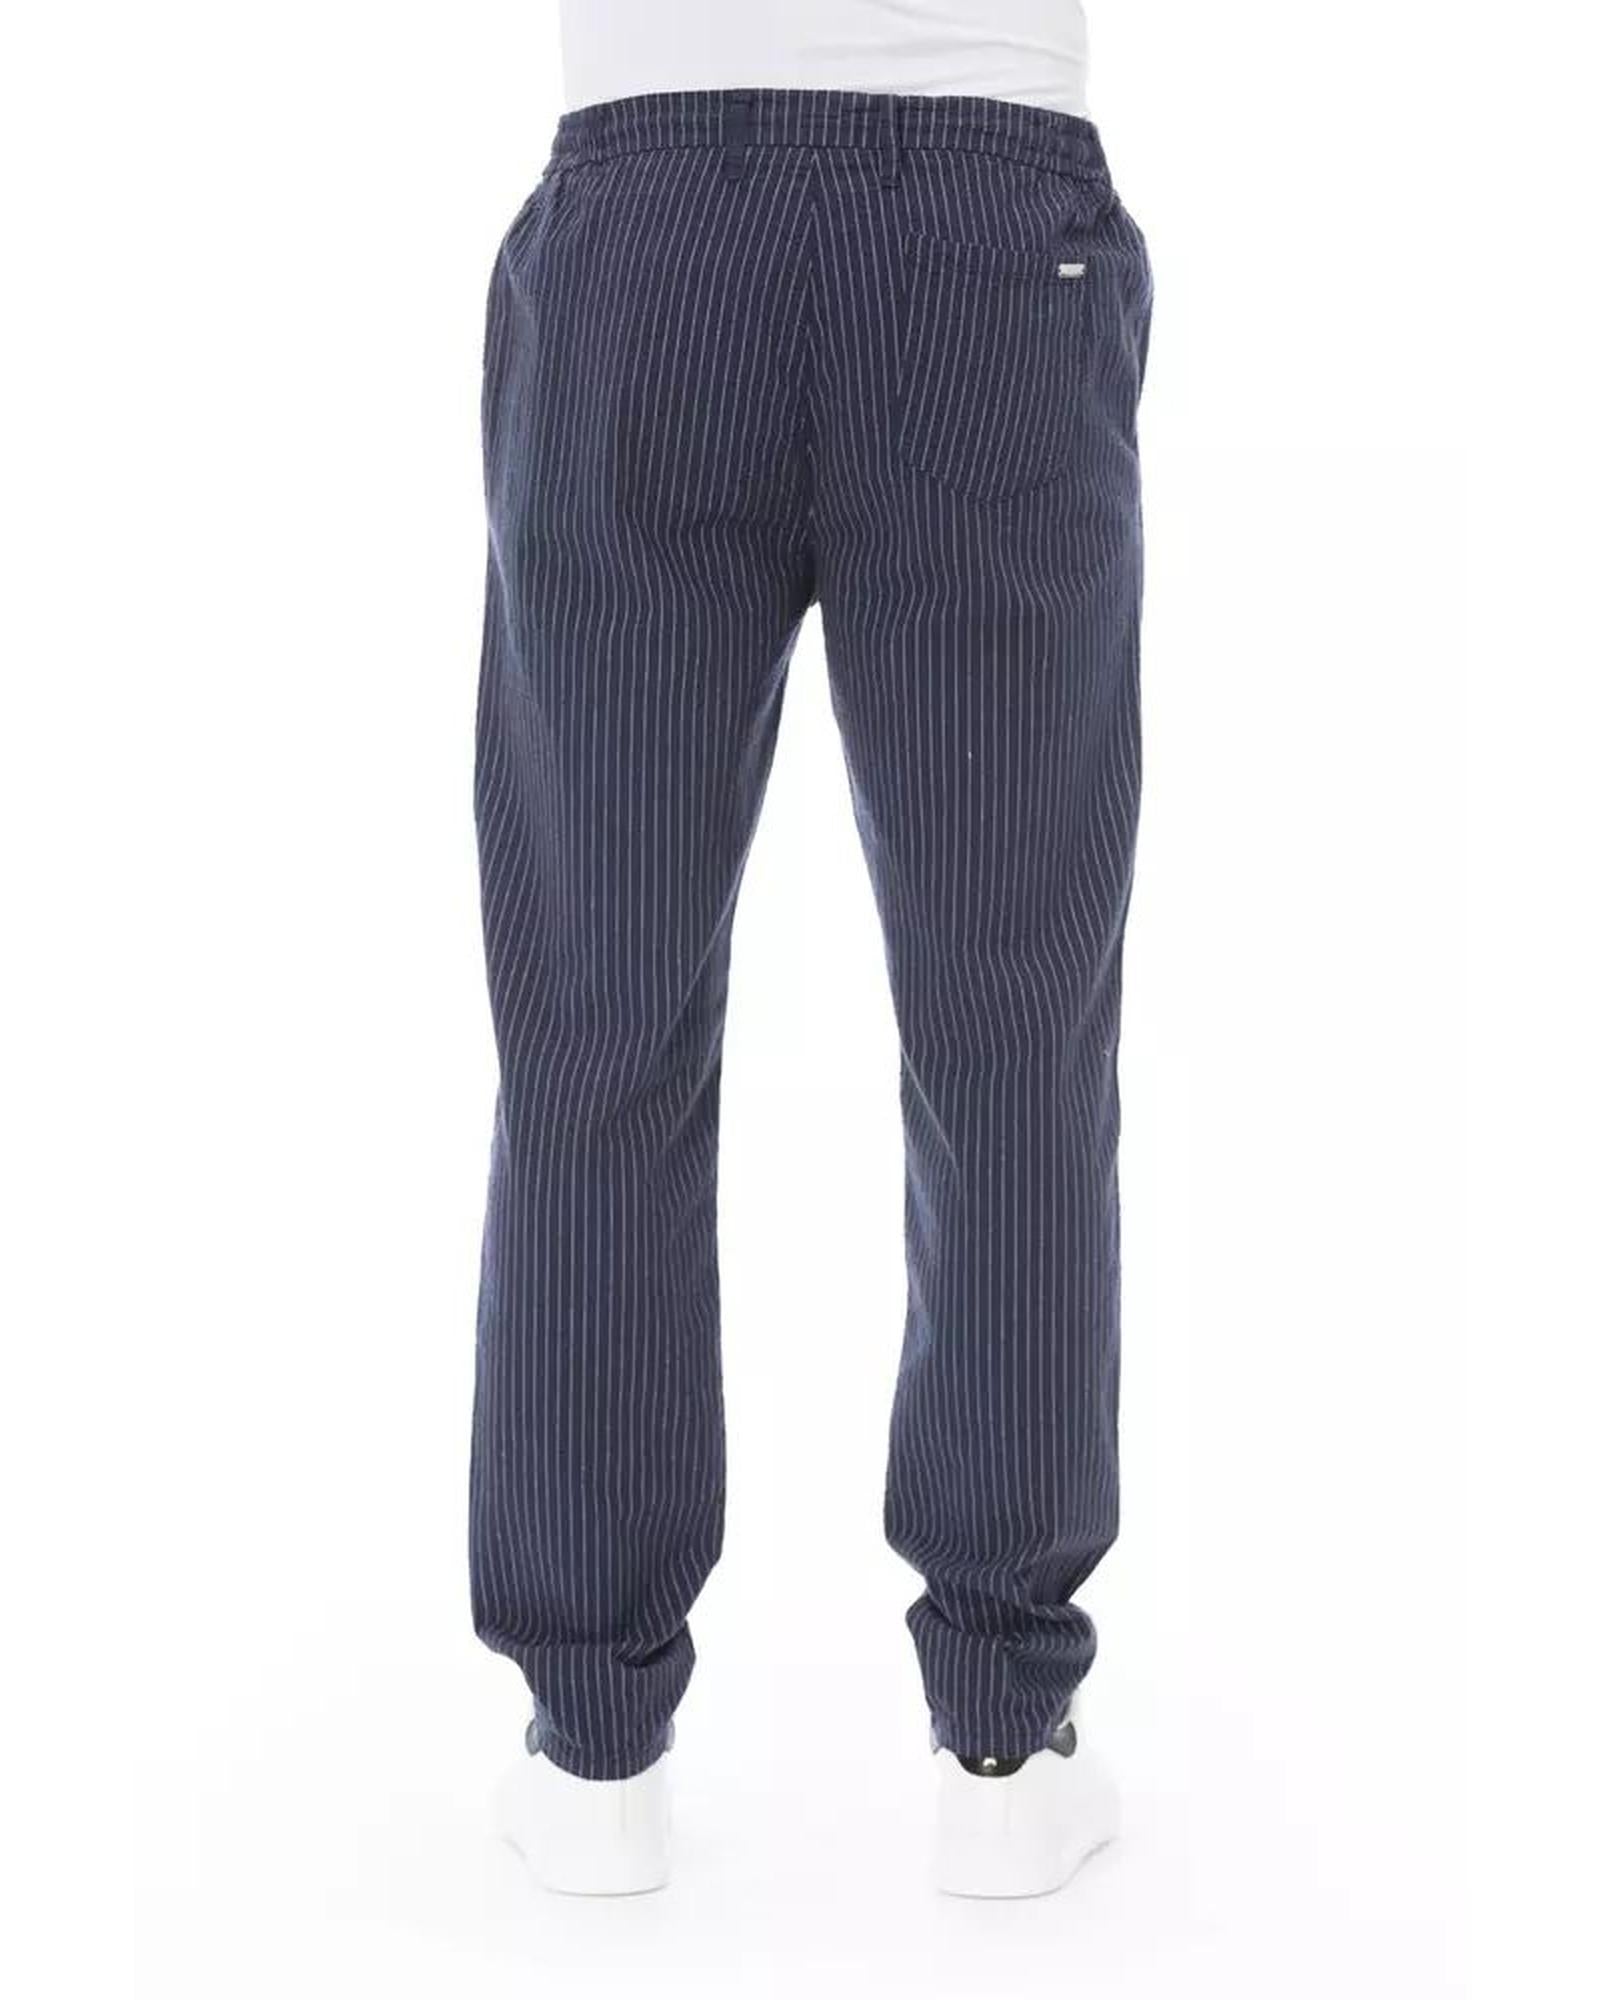 Men's Blue Cotton Jeans & Pant - W36 US